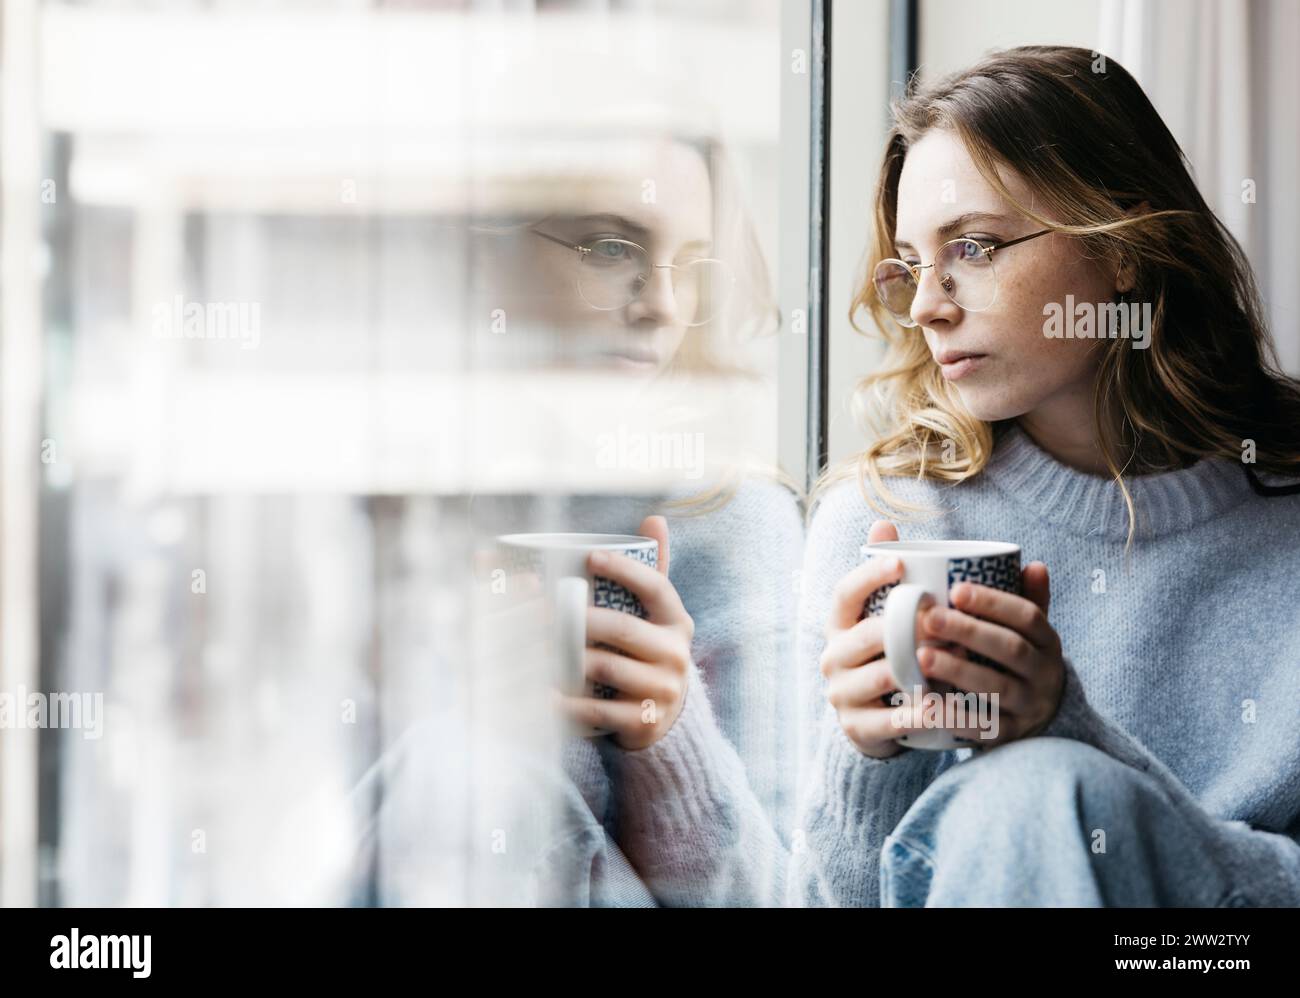 Nachdenkliche junge, schöne blonde Frau, die eine Tasse Tee an einem Fenster in ihrem Haus hält, was eine intime und gemütliche Atmosphäre schafft Stockfoto